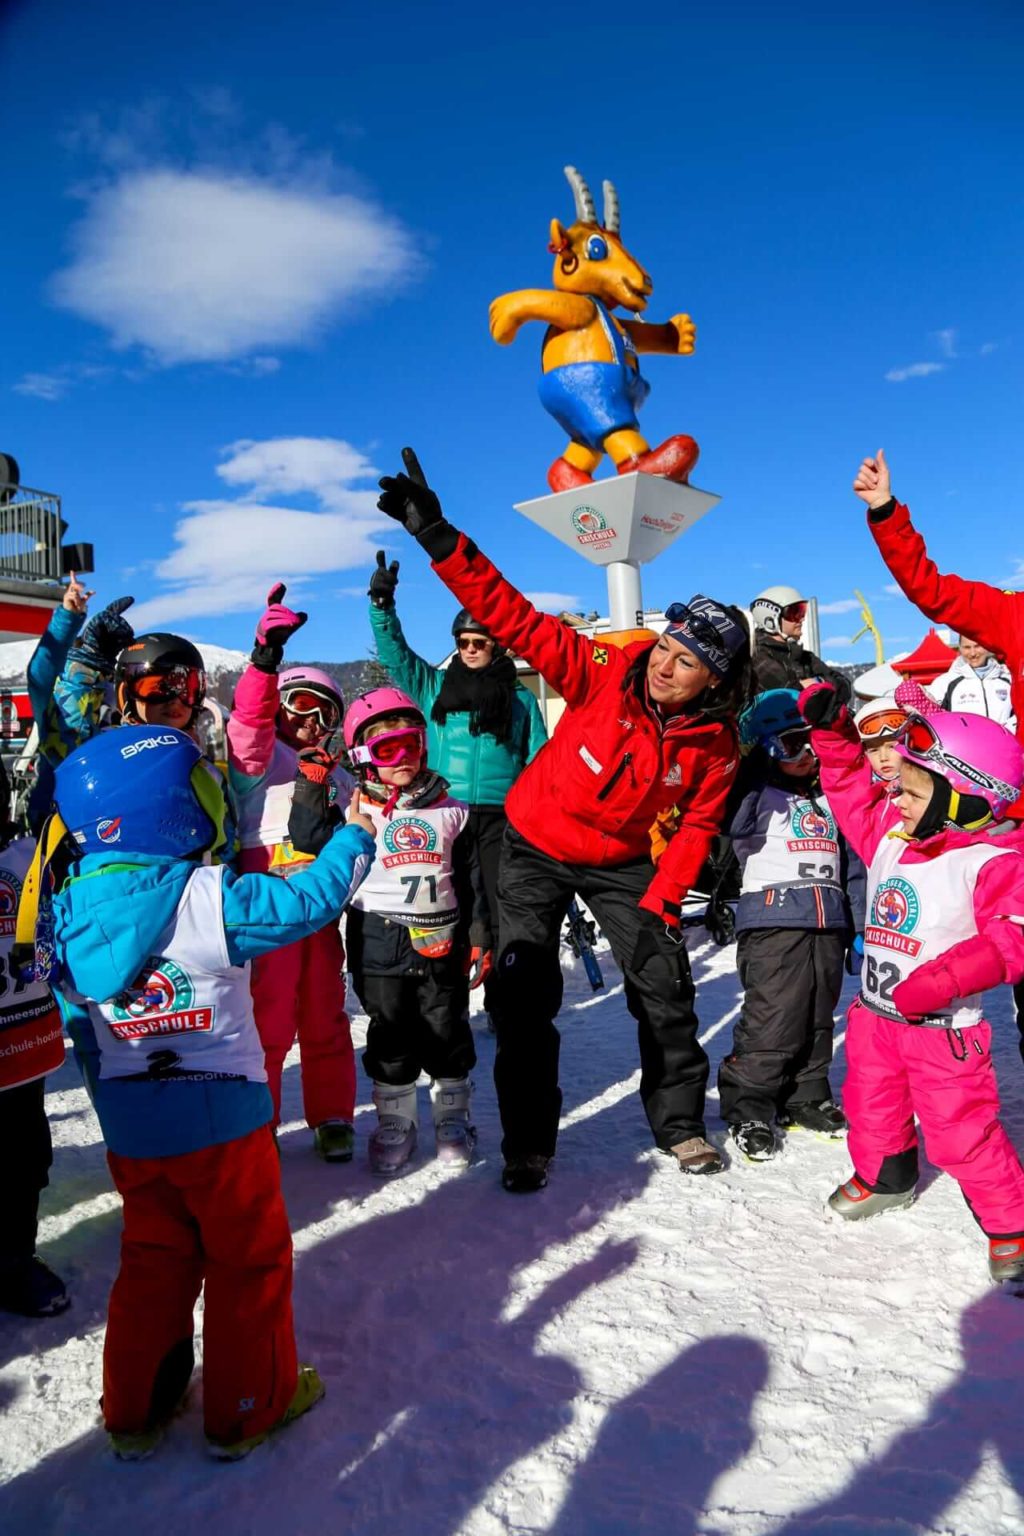 Aufwarmtanz in Pitzi skikurs für kinder ab 2 jahre